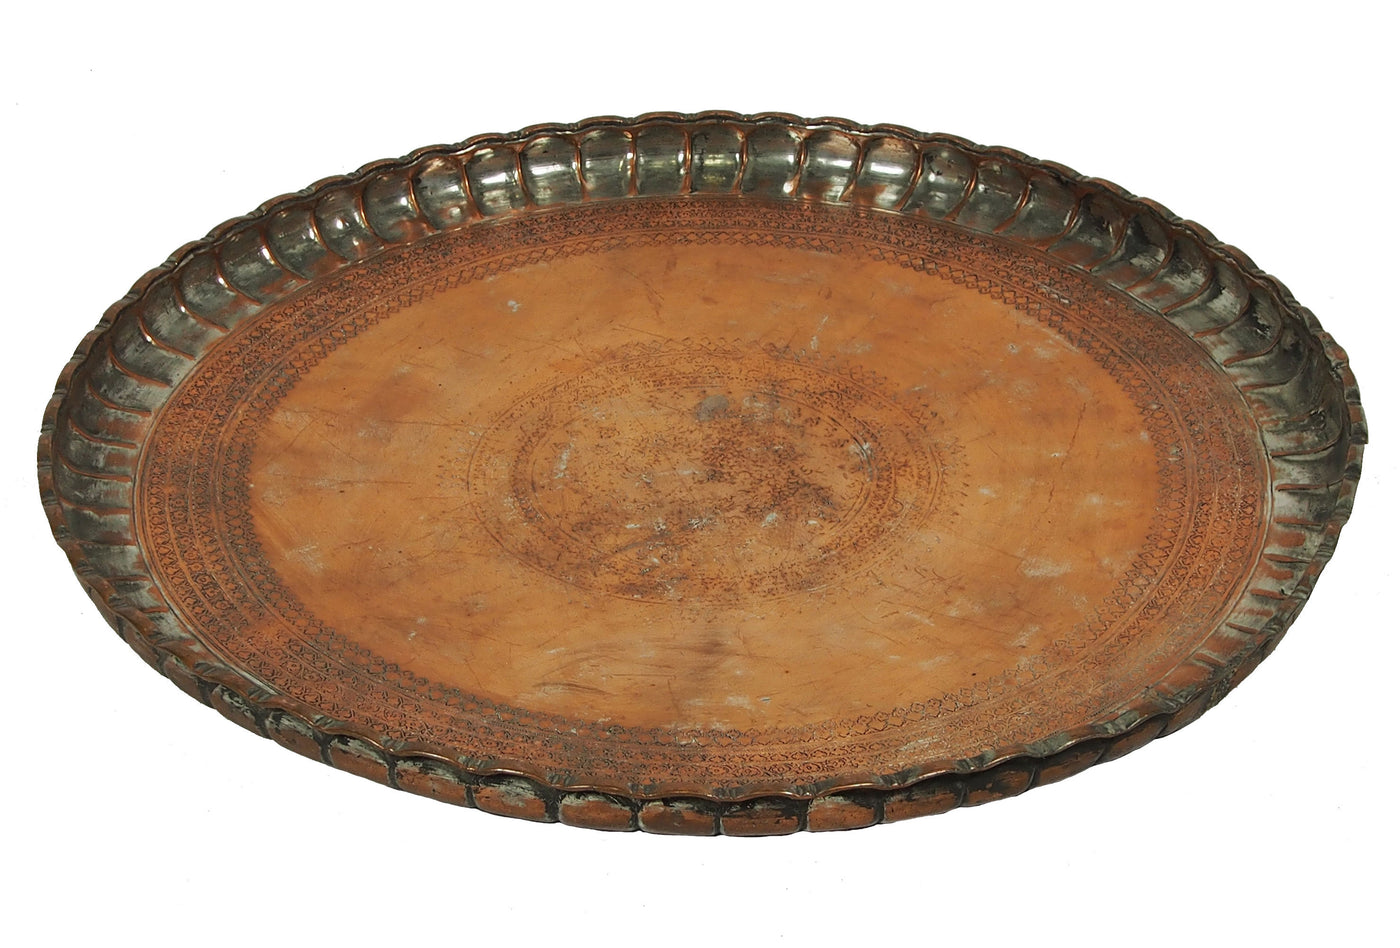 66 Ø antik osmanische islamische ägyptisch marokkanisch orient Kupfer tablett Teetisch Teller beisteltisch tisch aus Afghanistan No:19/8  Orientsbazar   